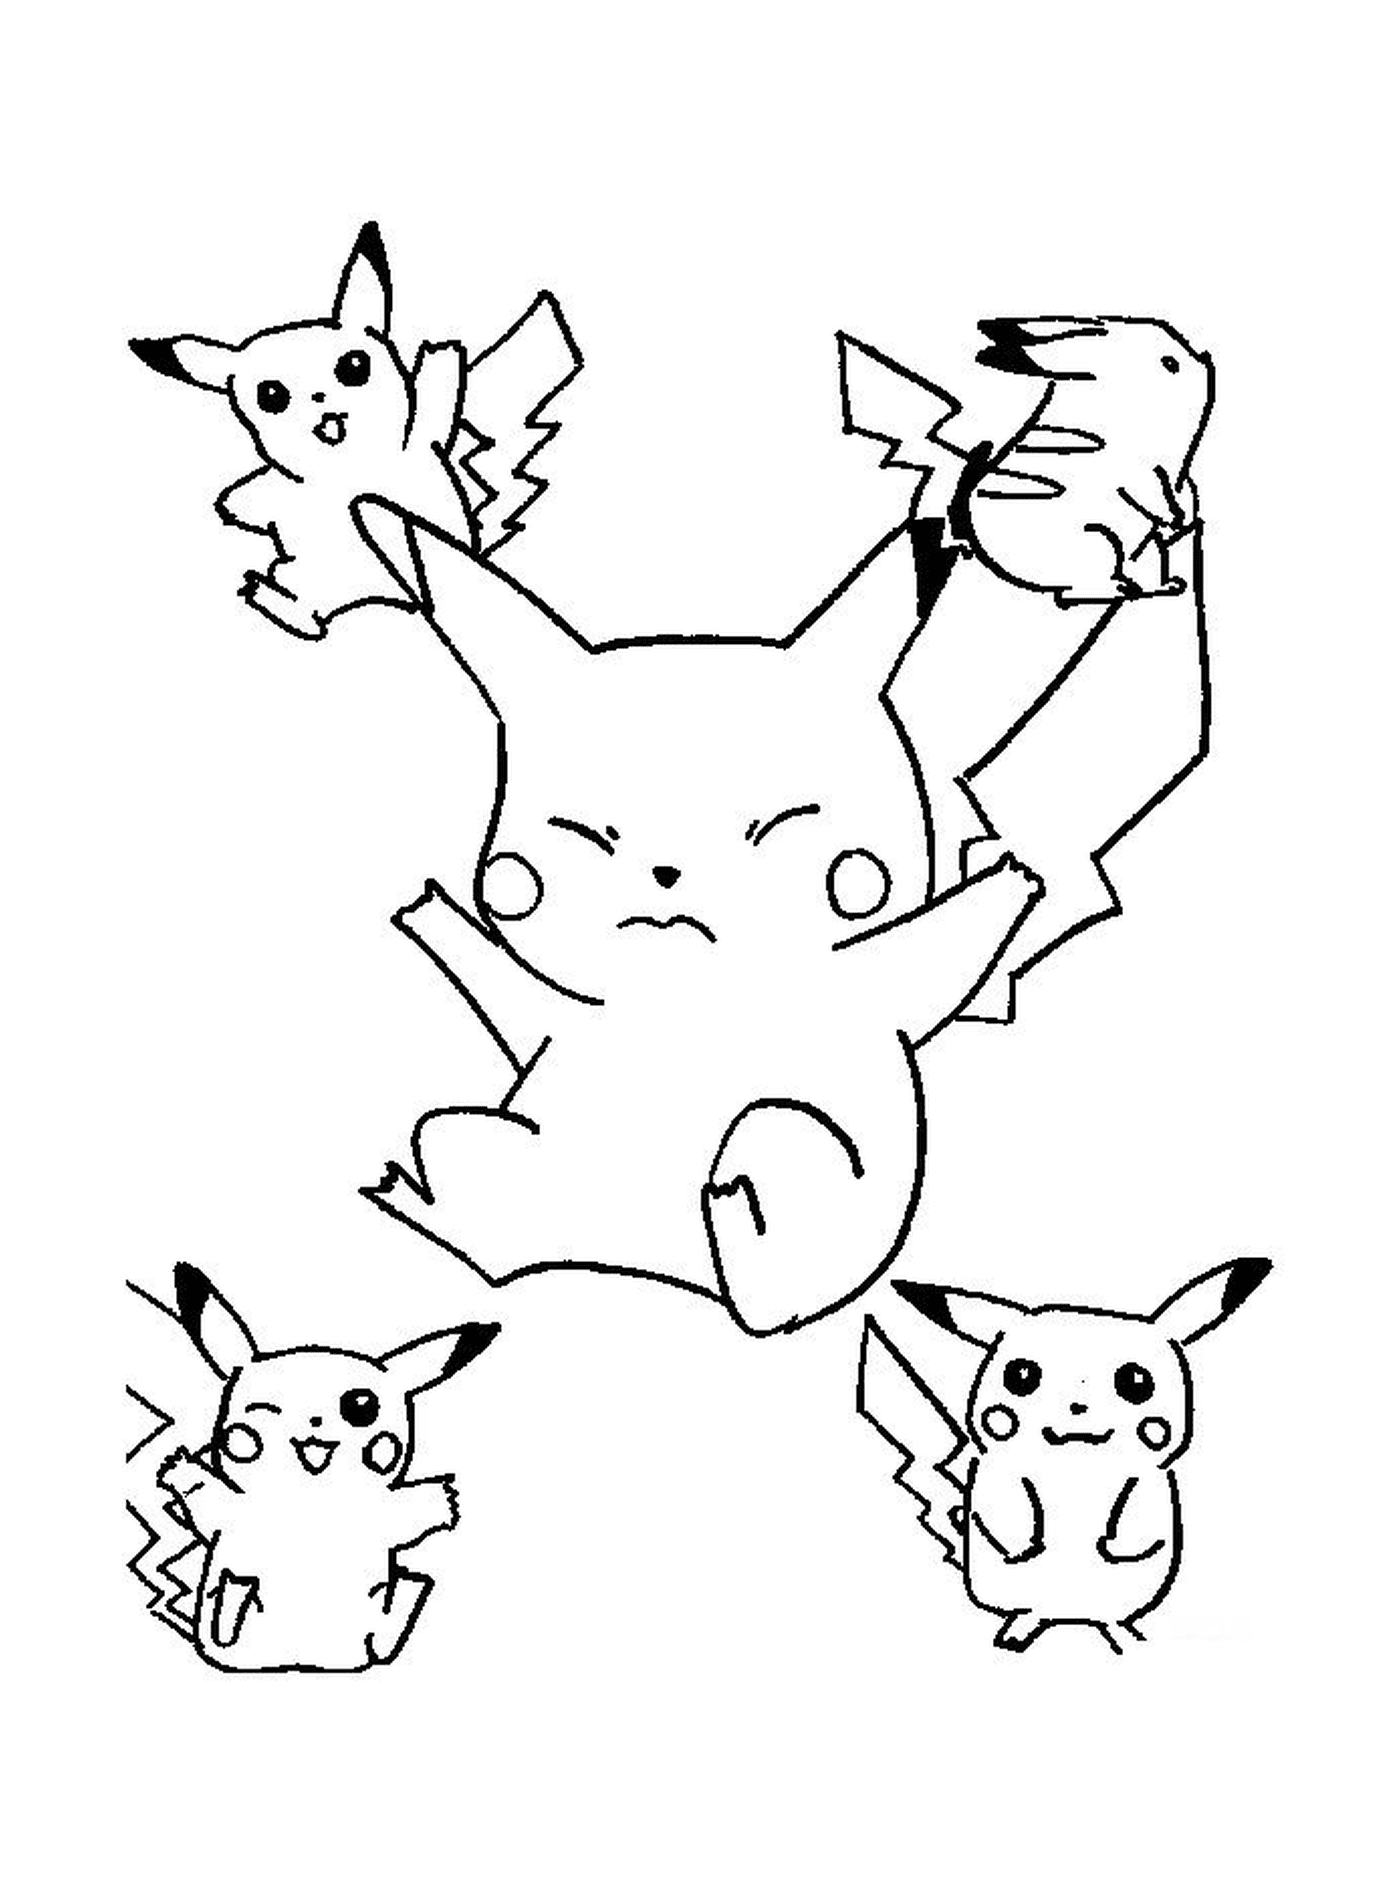   Un groupe de Pikachu sautant dans les airs 